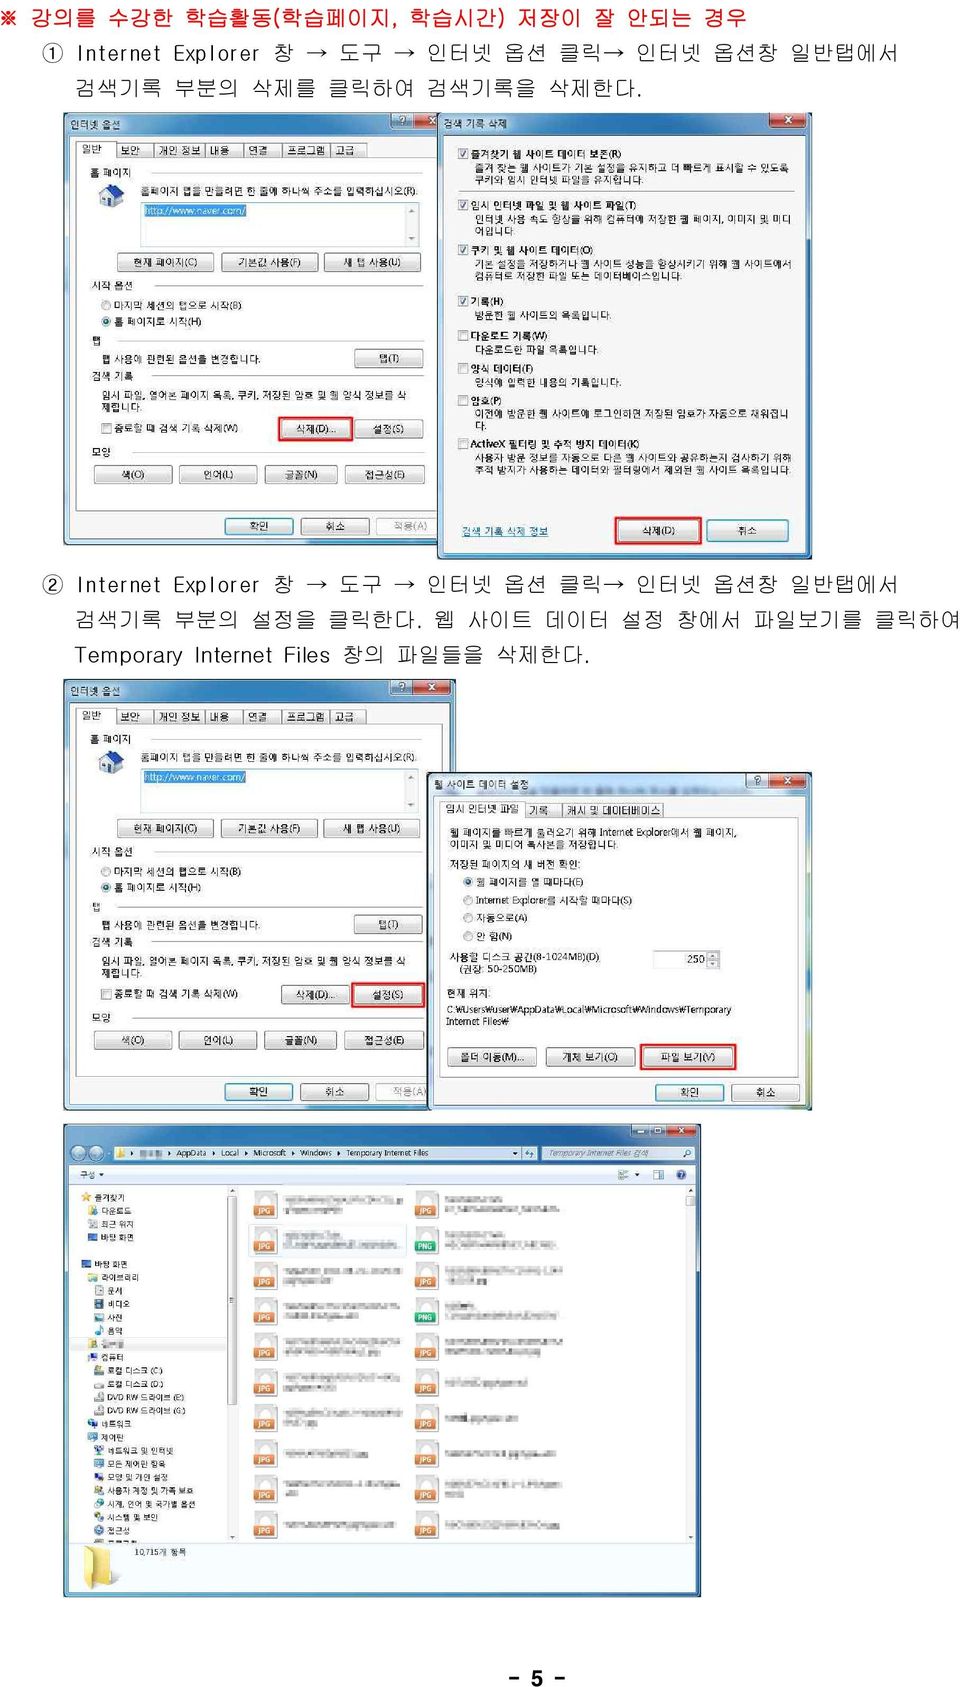 2 Internet Explorer 창 도구 인터넷 옵션 클릭 인터넷 옵션창 일반탭에서 검색기록 부분의 설정을